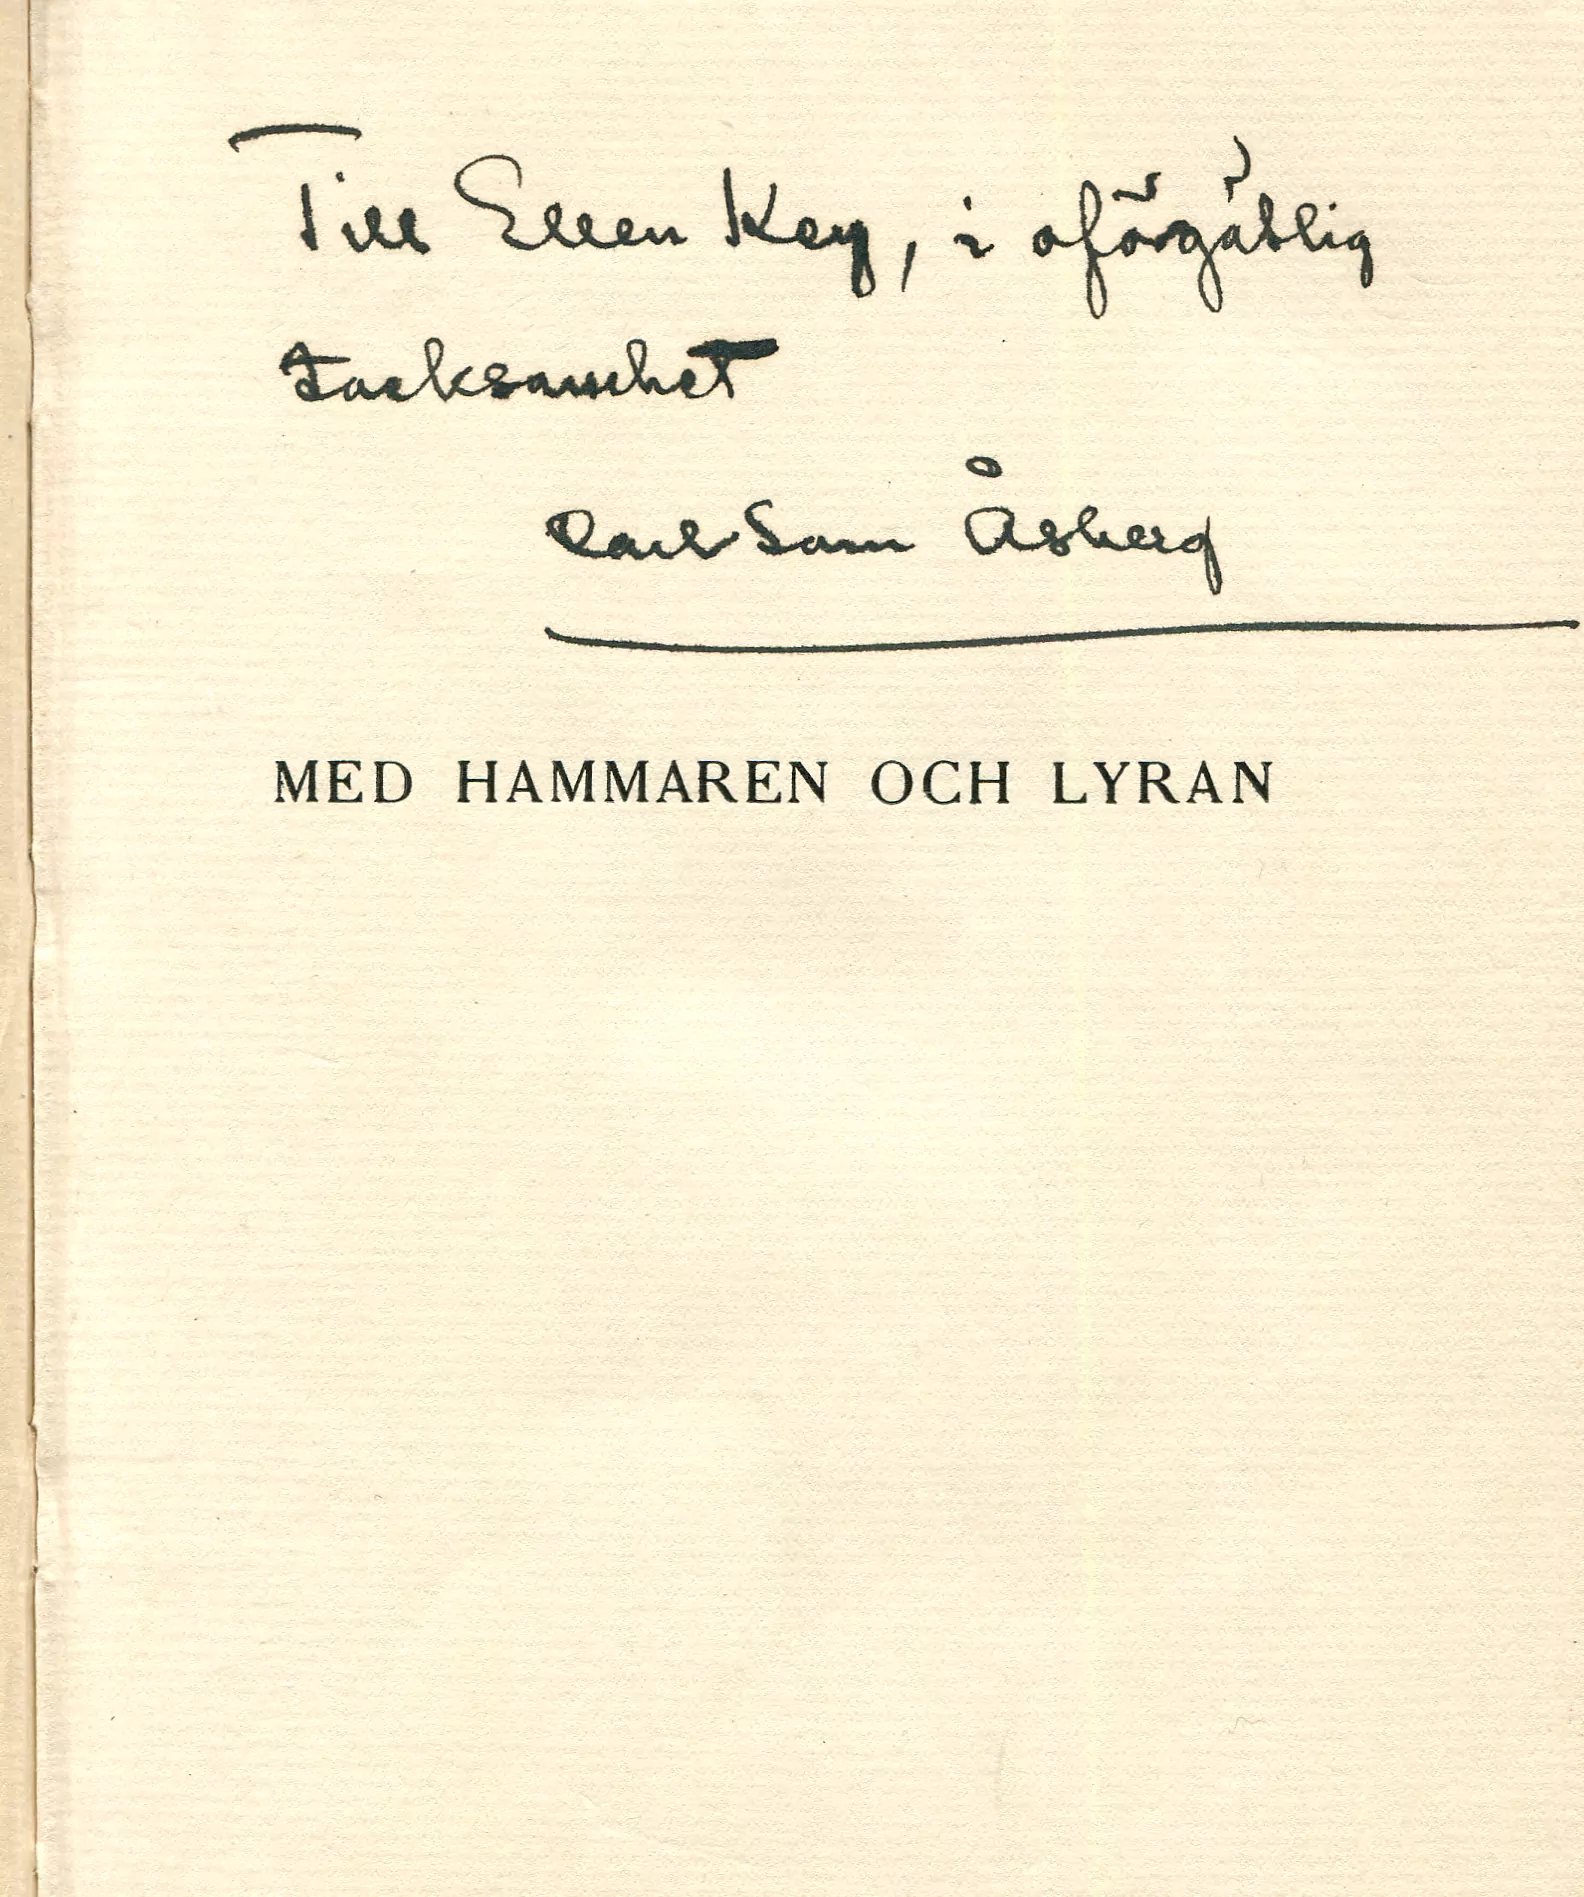 Med hammaren och lyran , Stockholm 1910